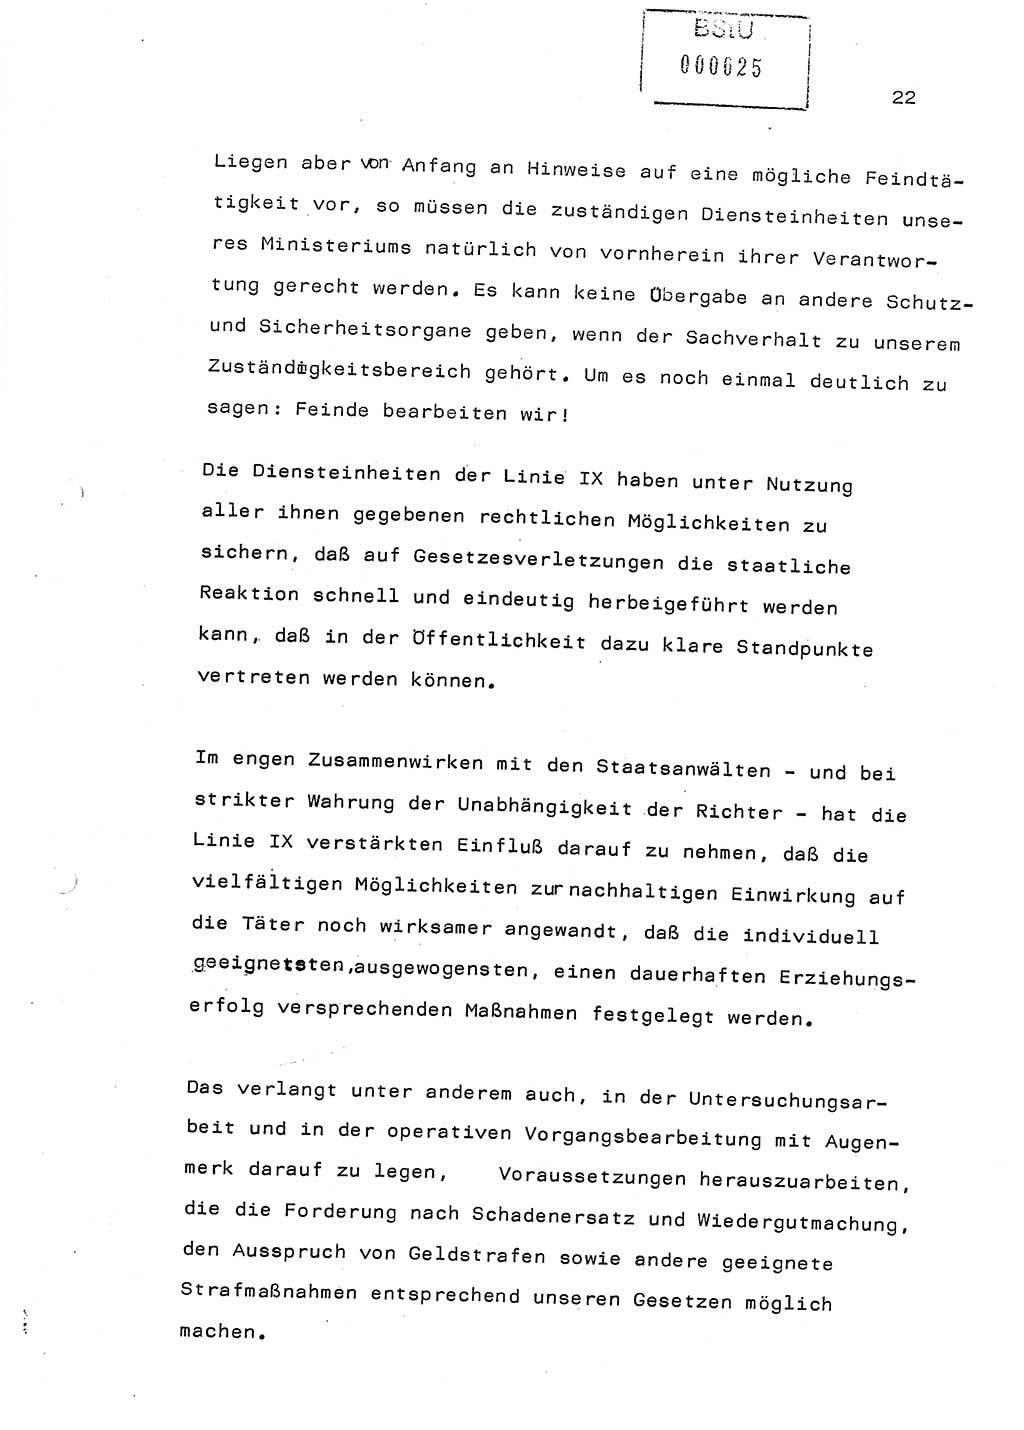 Referat (Generaloberst Erich Mielke) auf der Zentralen Dienstkonferenz am 24.5.1979 [Ministerium für Staatssicherheit (MfS), Deutsche Demokratische Republik (DDR), Der Minister], Berlin 1979, Seite 22 (Ref. DK DDR MfS Min. /79 1979, S. 22)